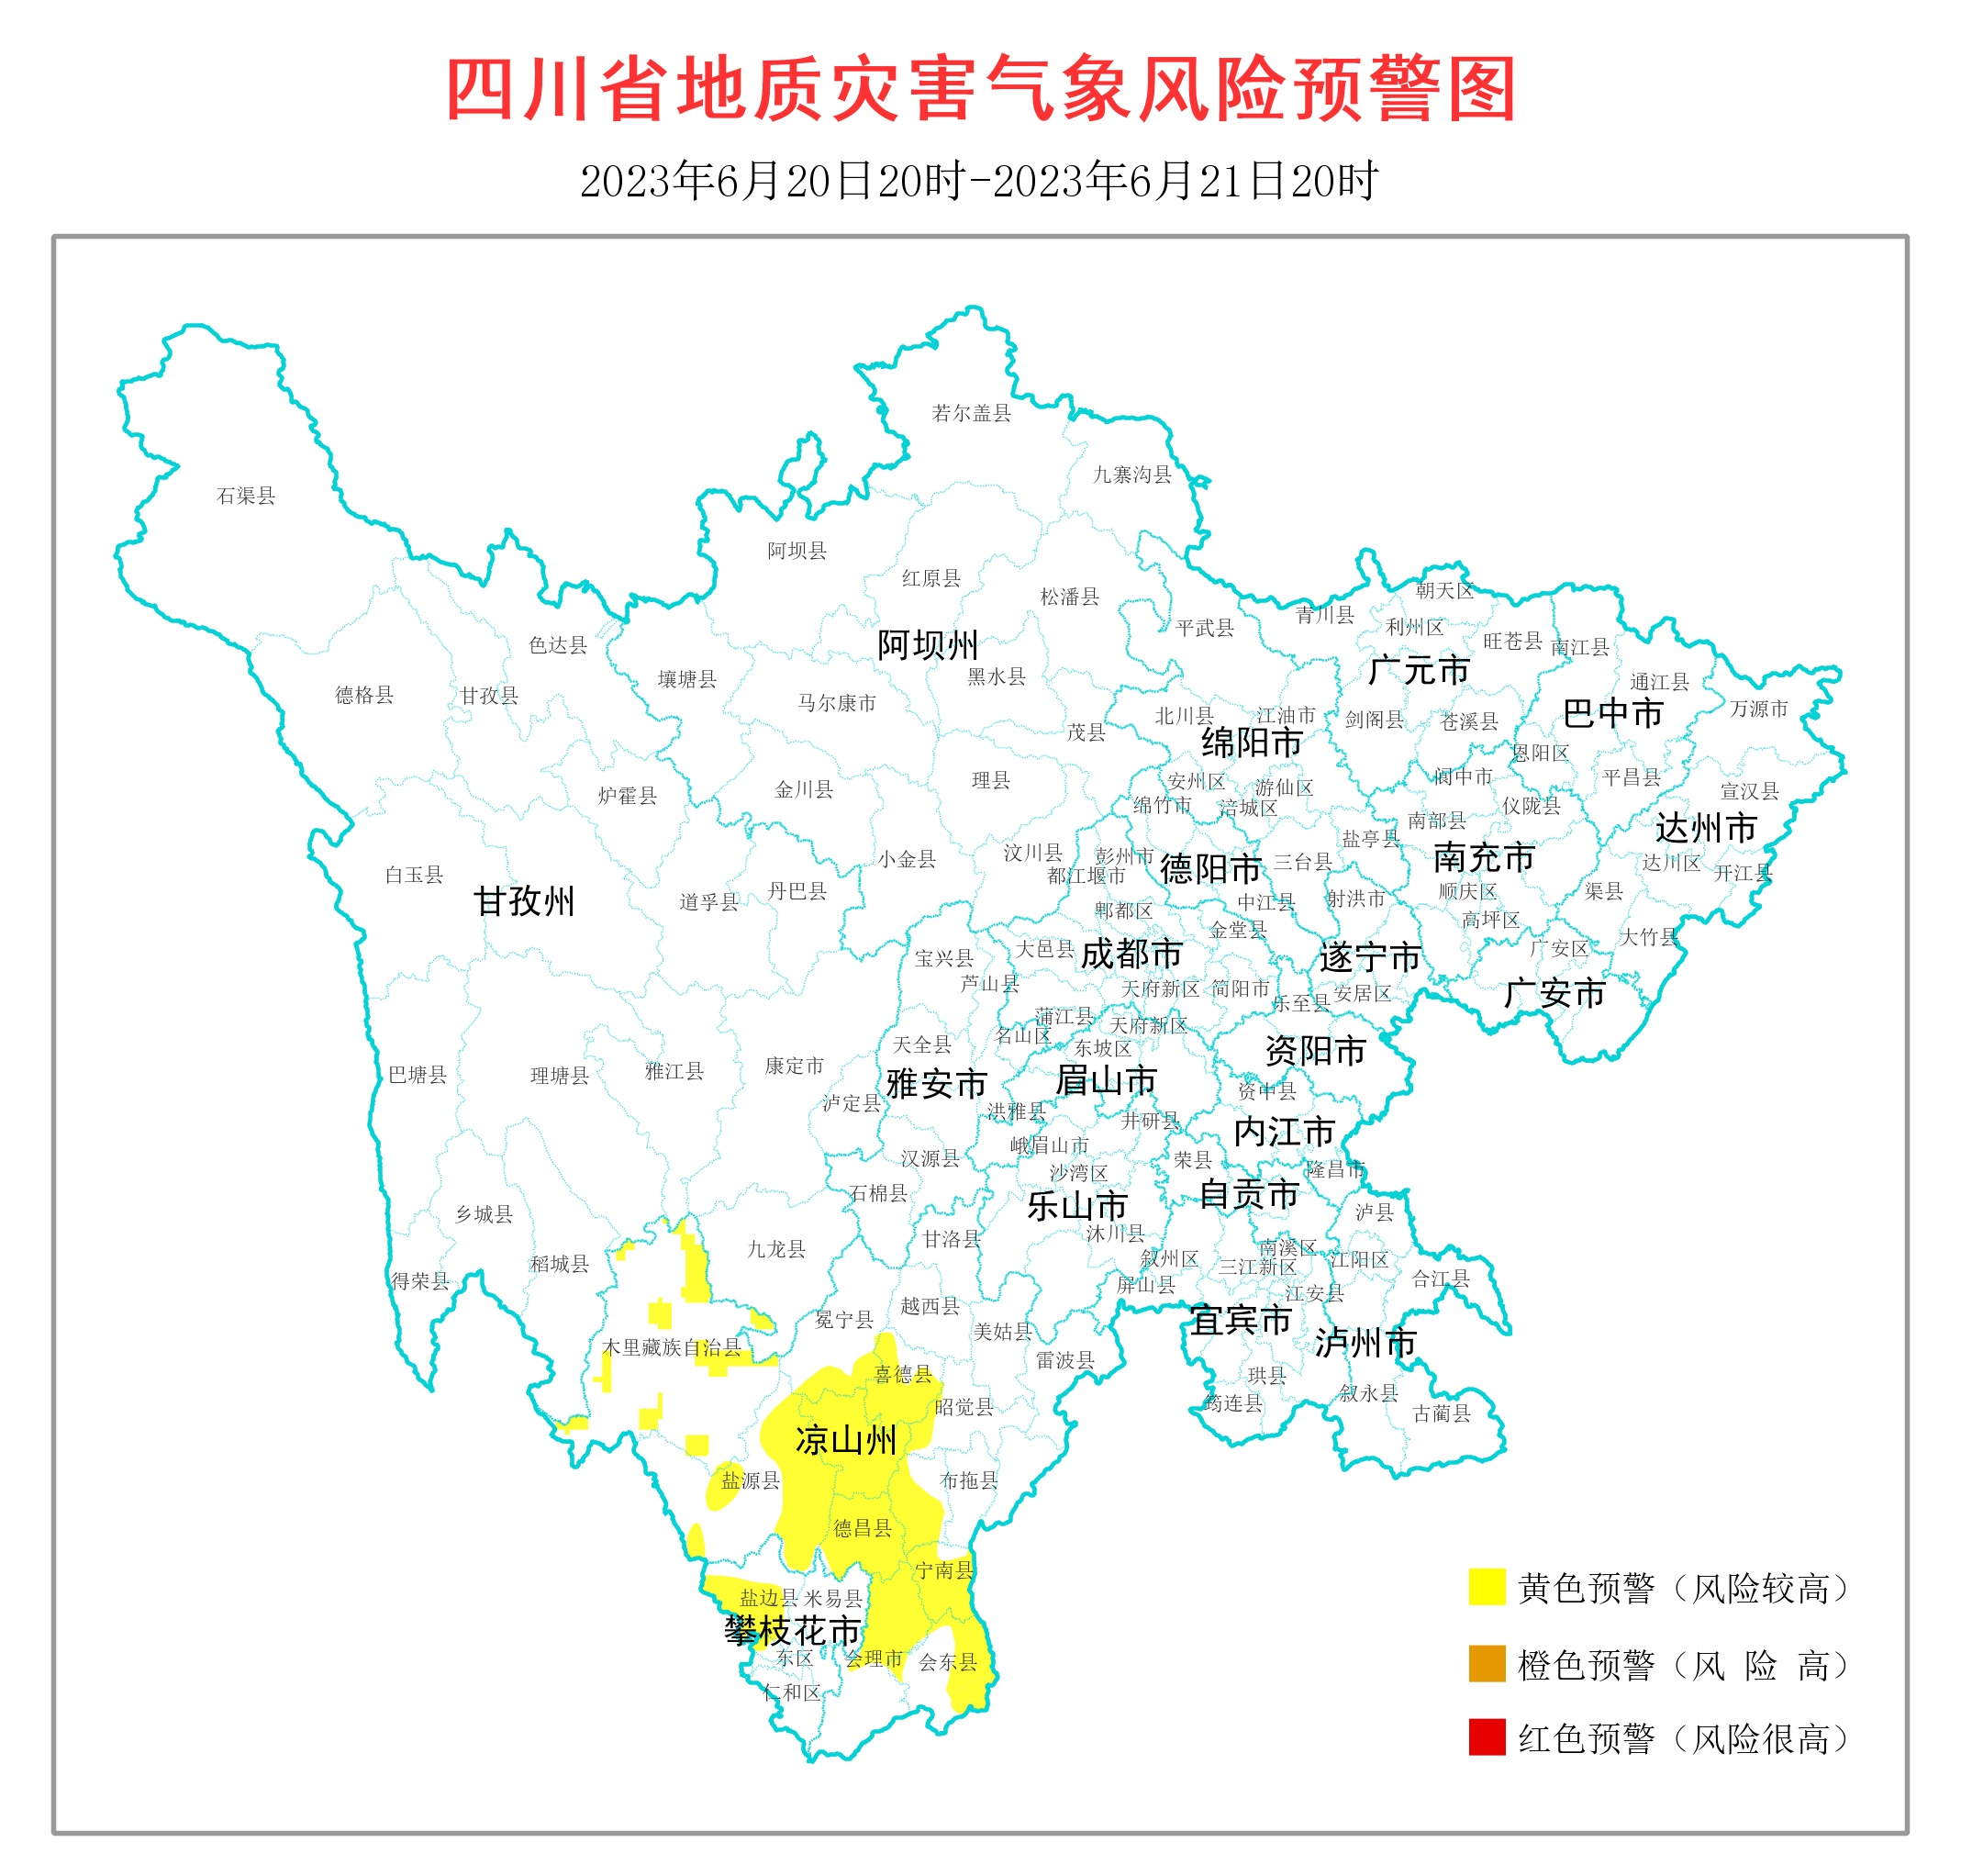 密切关注！四川地灾黄色预警区域覆盖14个县市区